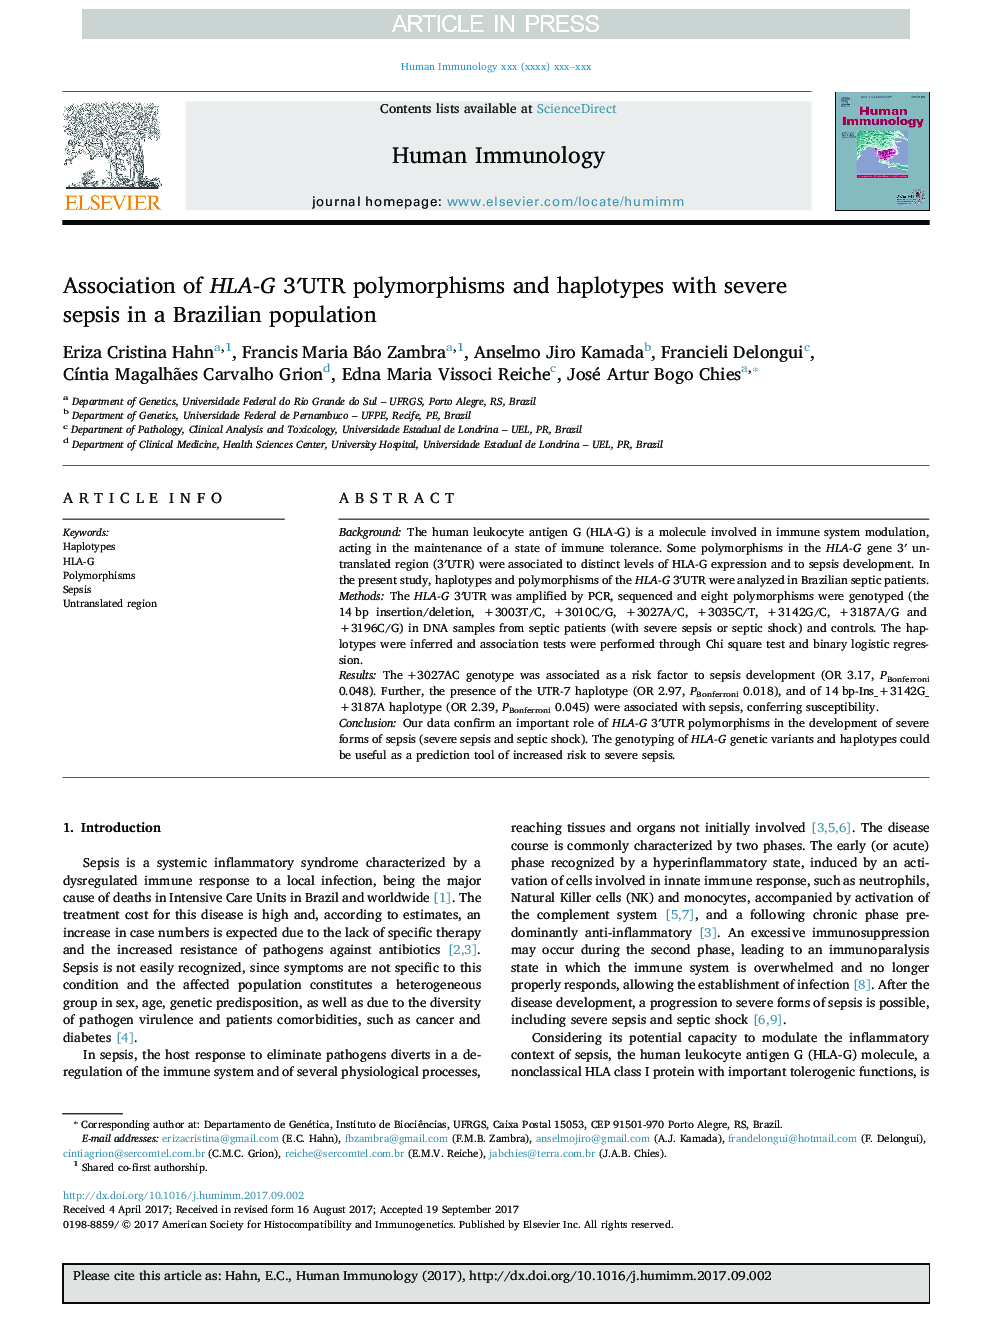 Association of HLA-G 3â²UTR polymorphisms and haplotypes with severe sepsis in a Brazilian population